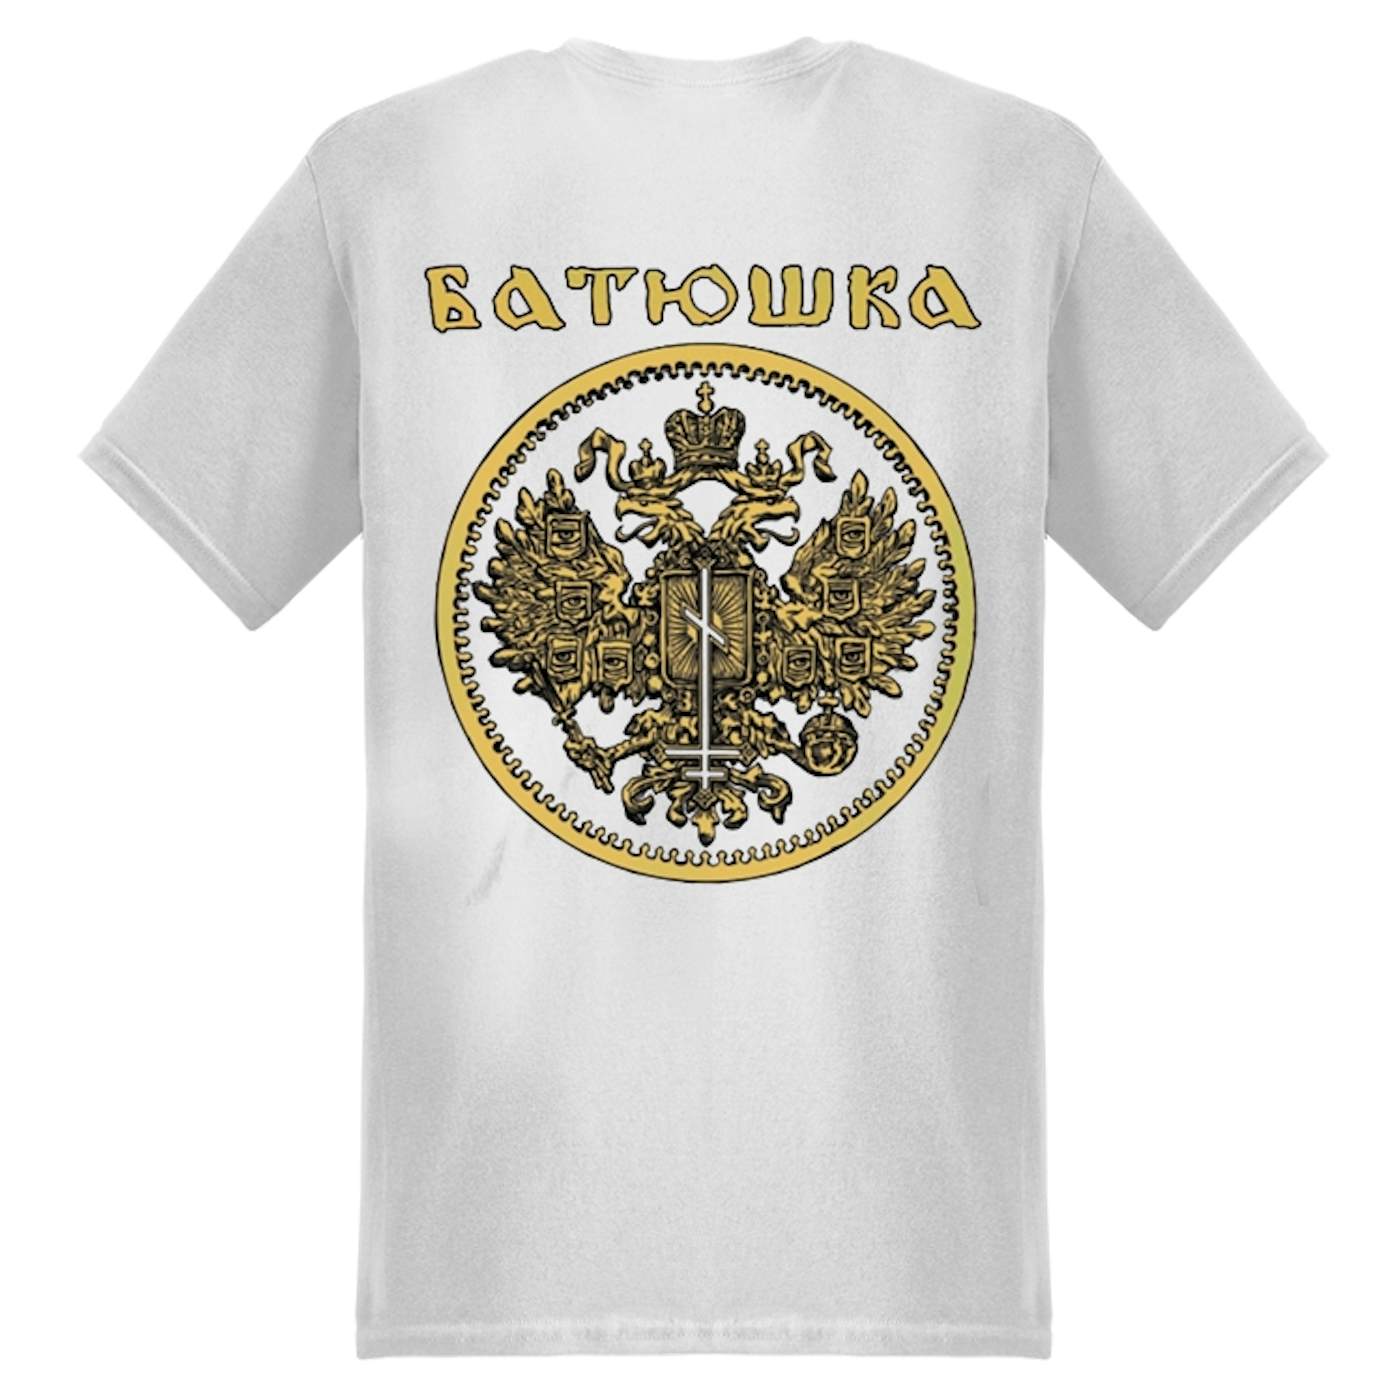 BATUSHKA - 'Carju Niebiesnyj' T-Shirt